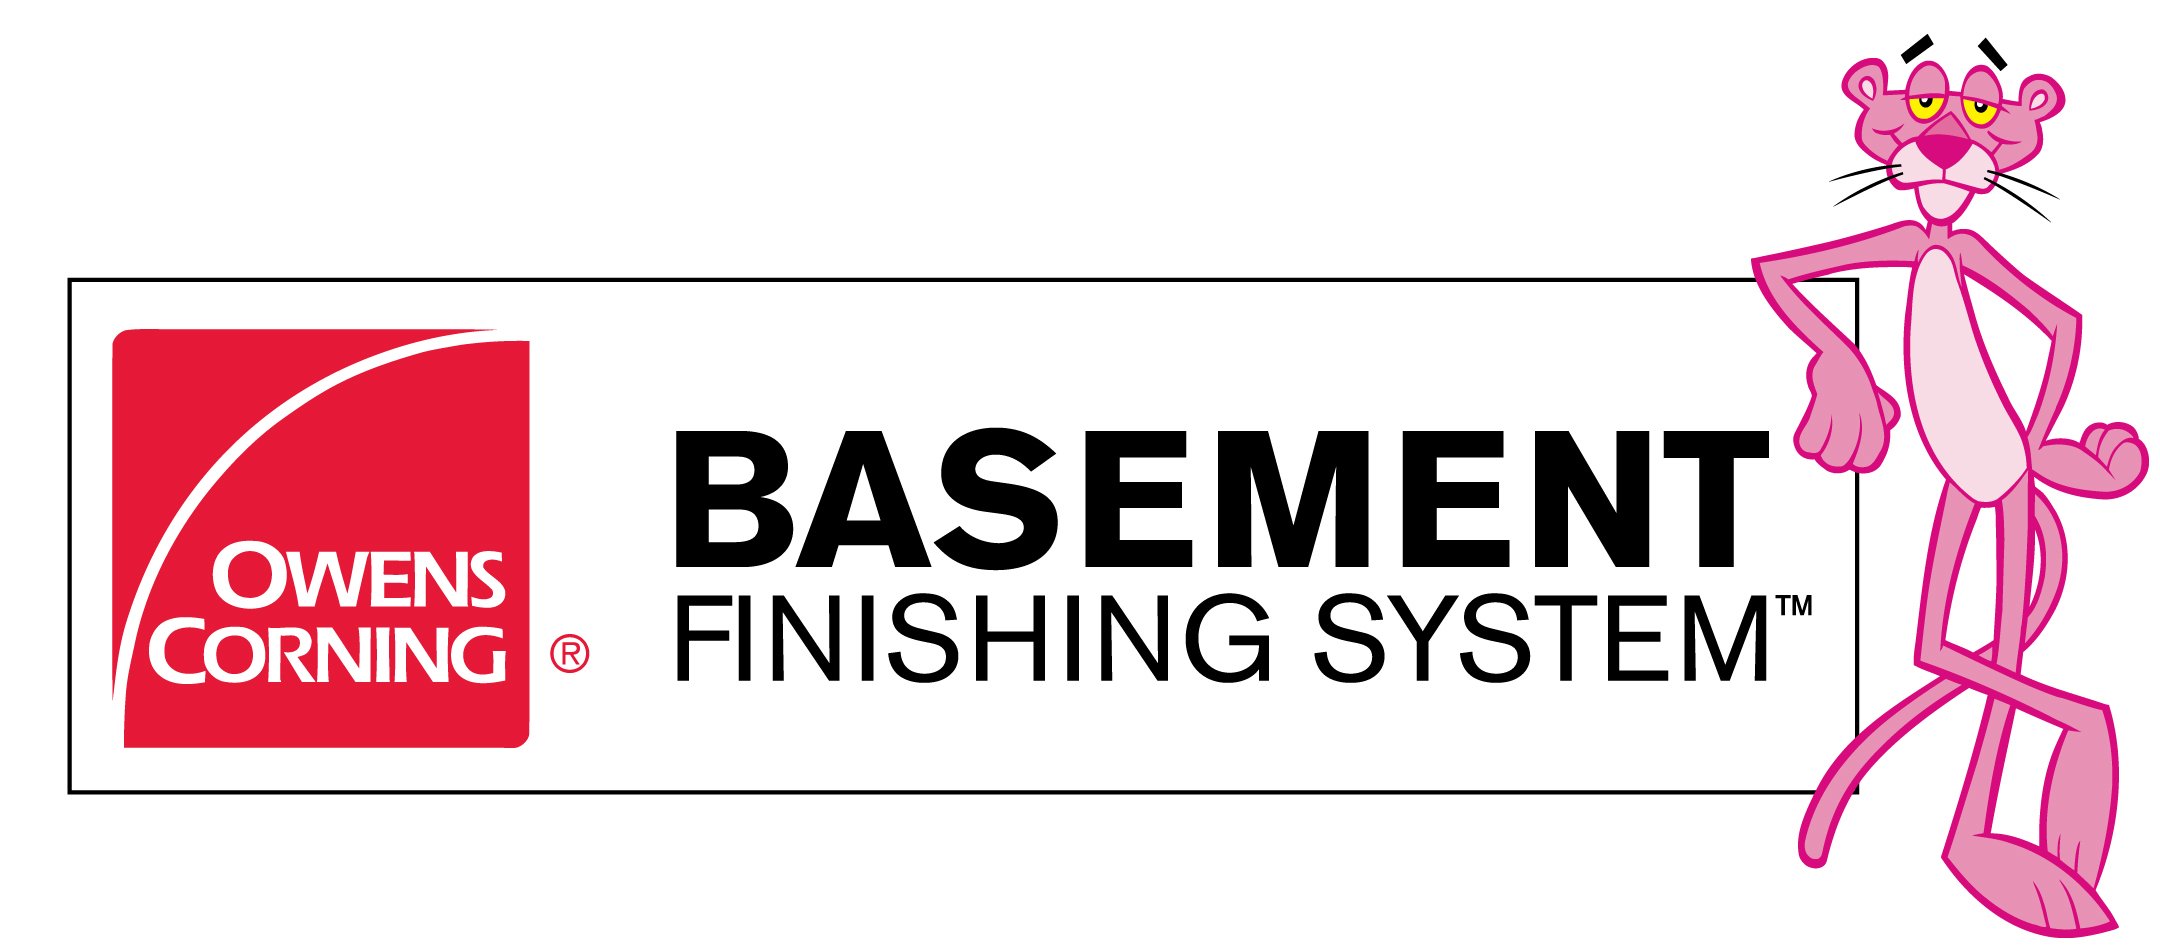 Owens Corning Basement Finishing System Logo